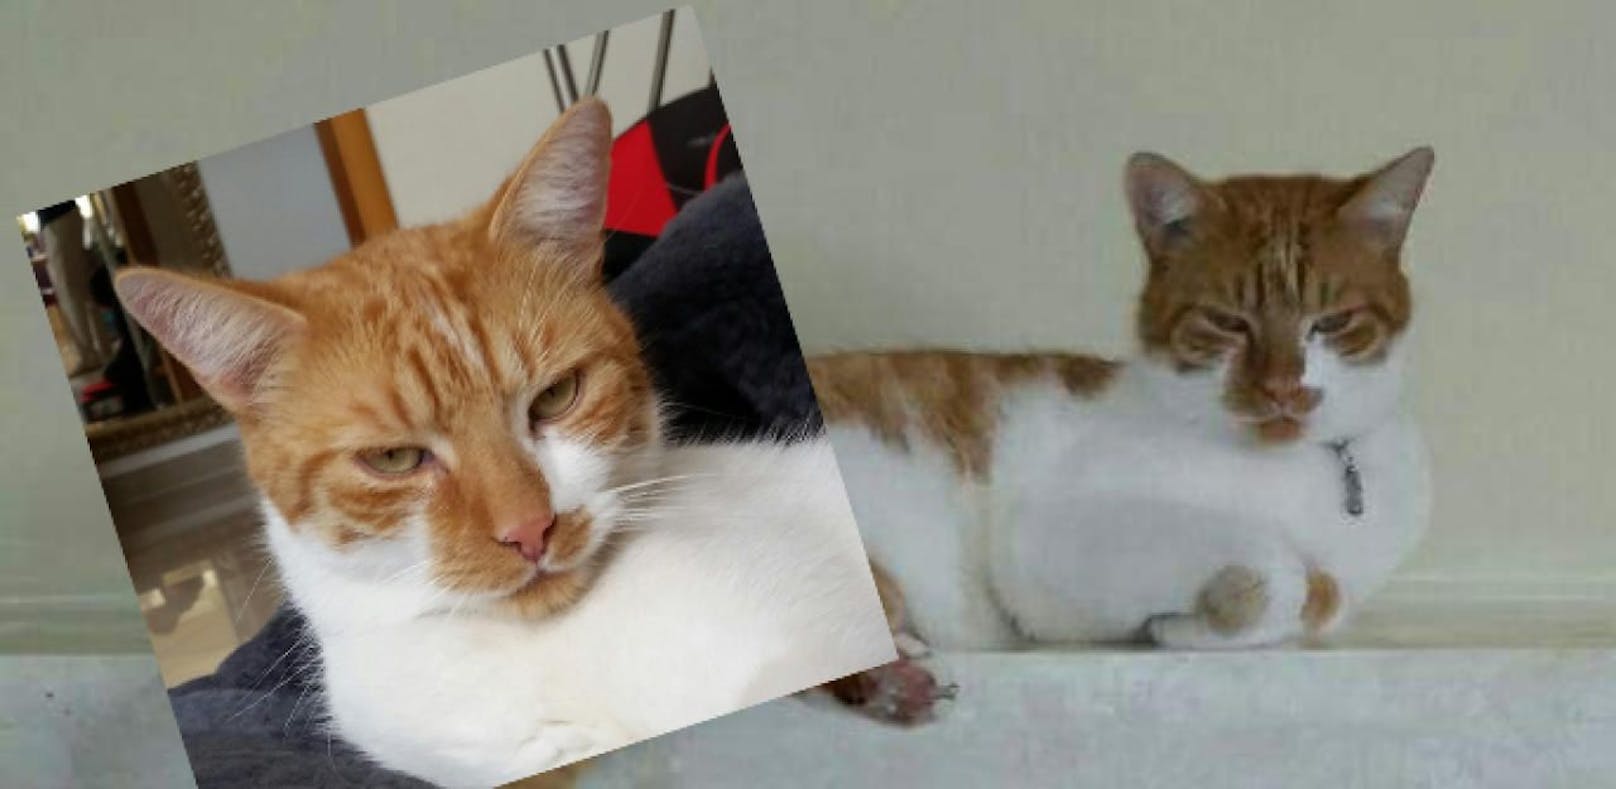 Katze entführt? 300 Euro Finderlohn für 'Mr.Cat'